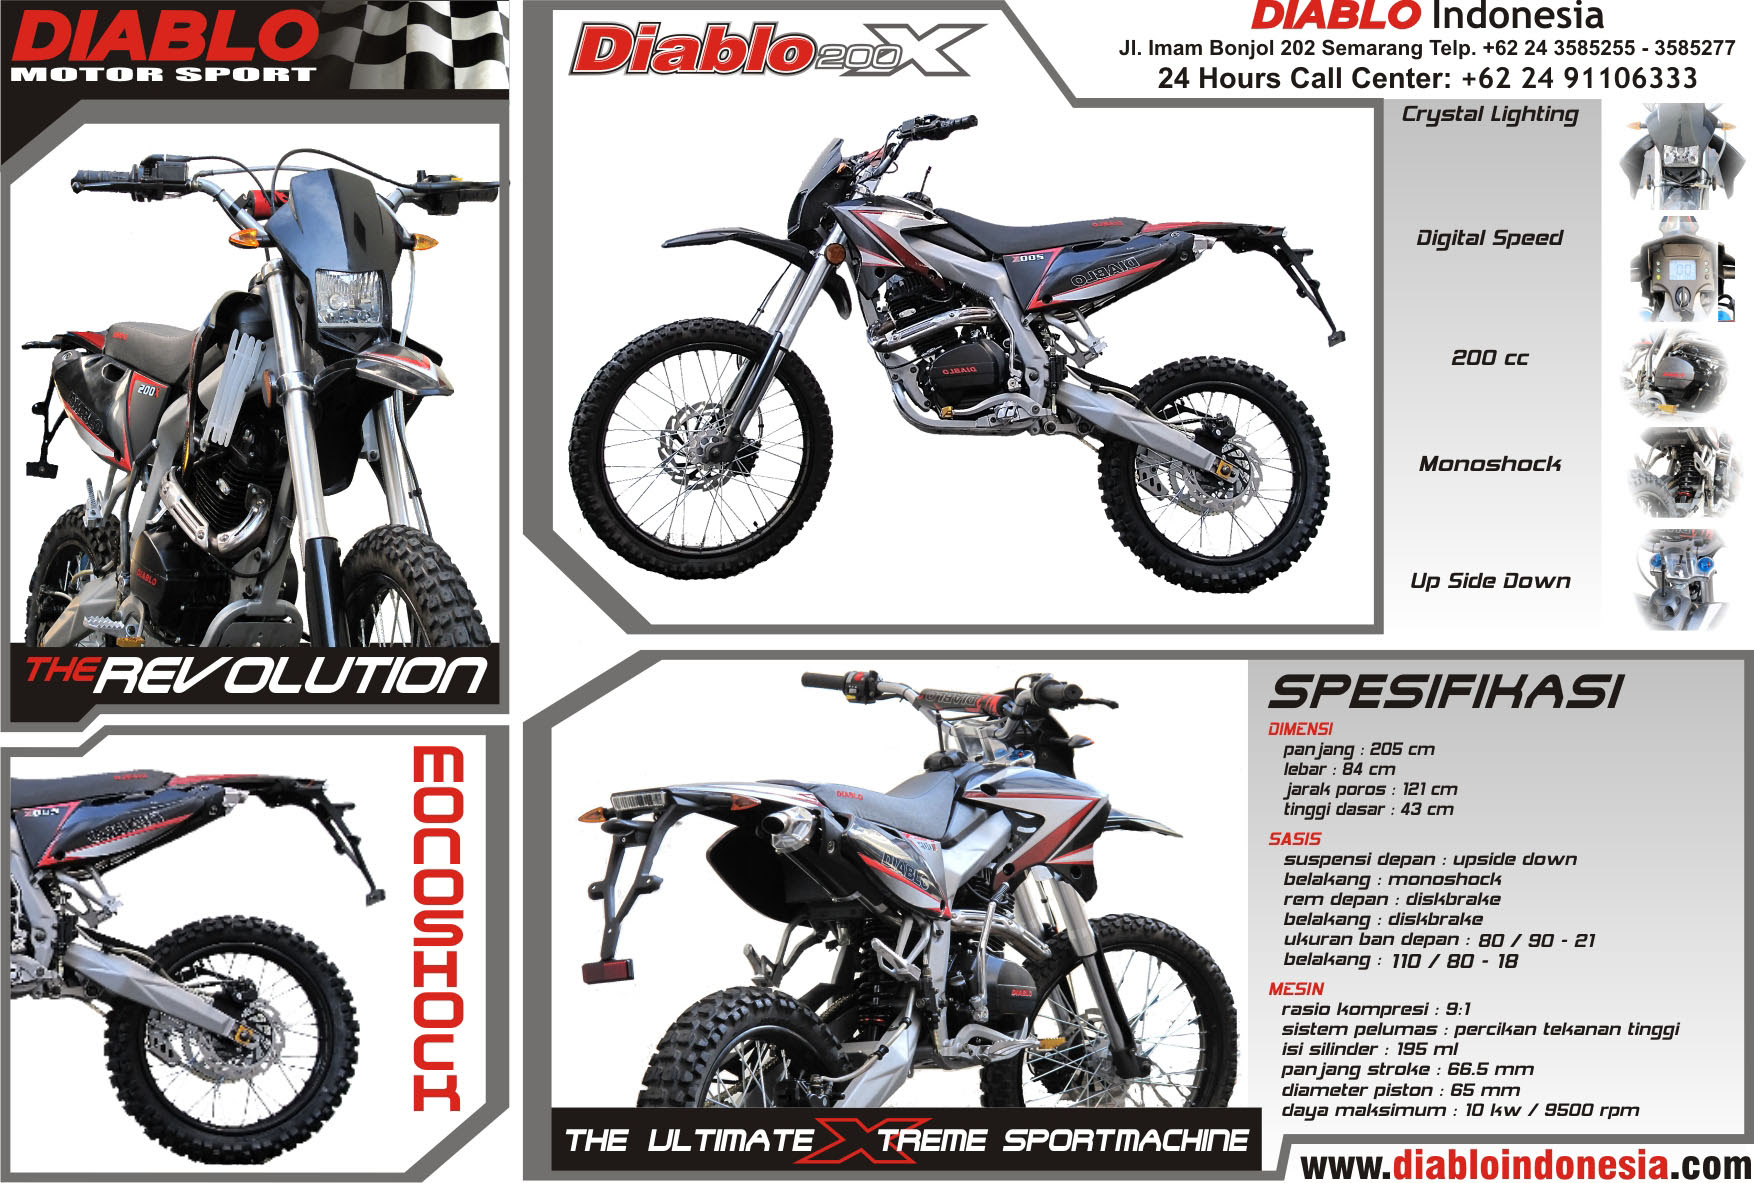 Diablo Motocross Mobile Site